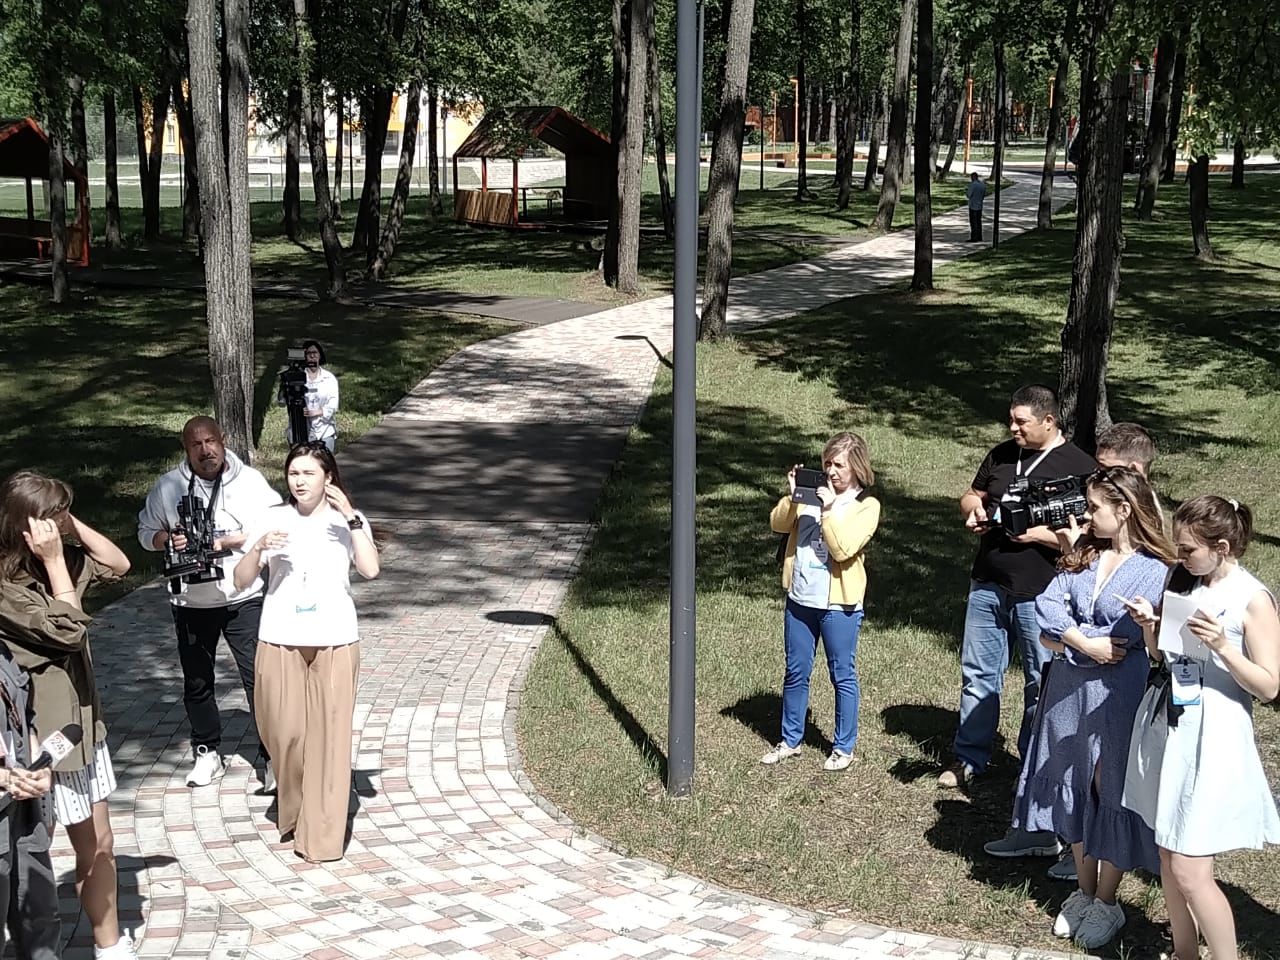 Работники Буинского телевидения Наталья Смирнова и Ильнур Кадыров сегодня на фестивале  “Камский  Бриз”  (+фото)